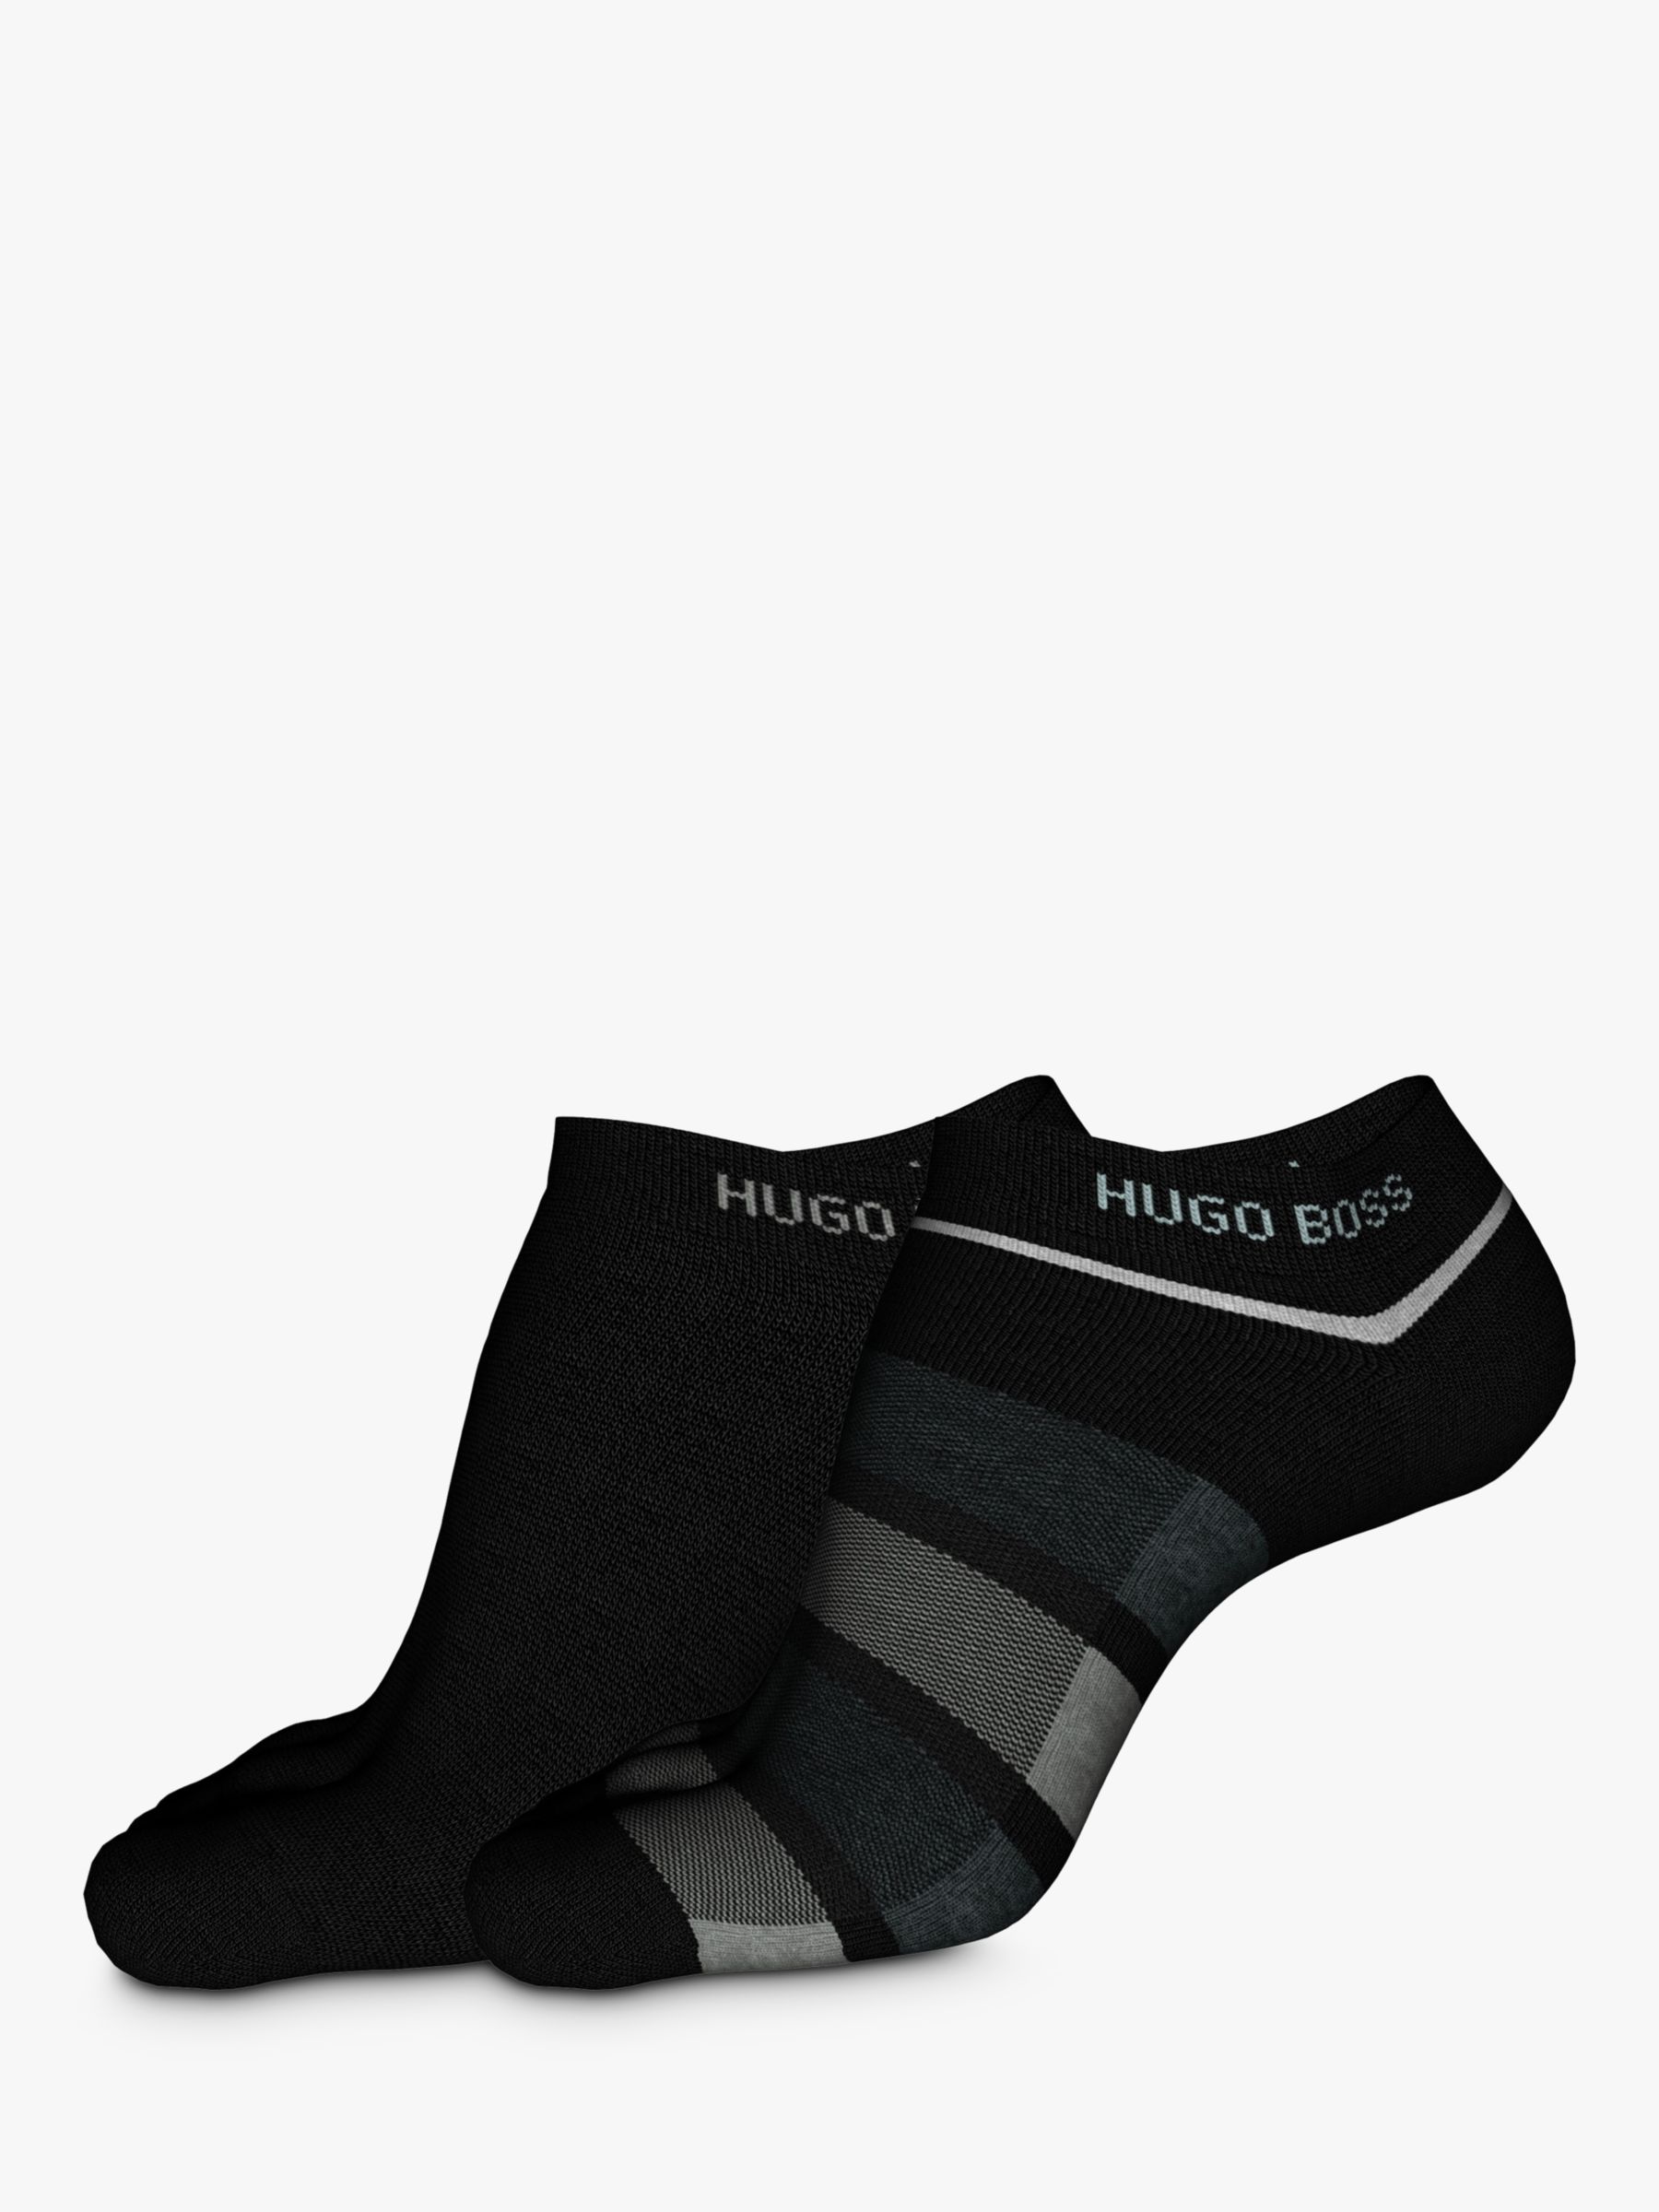 BOSS Stripe Trainer Socks, Pack of 2